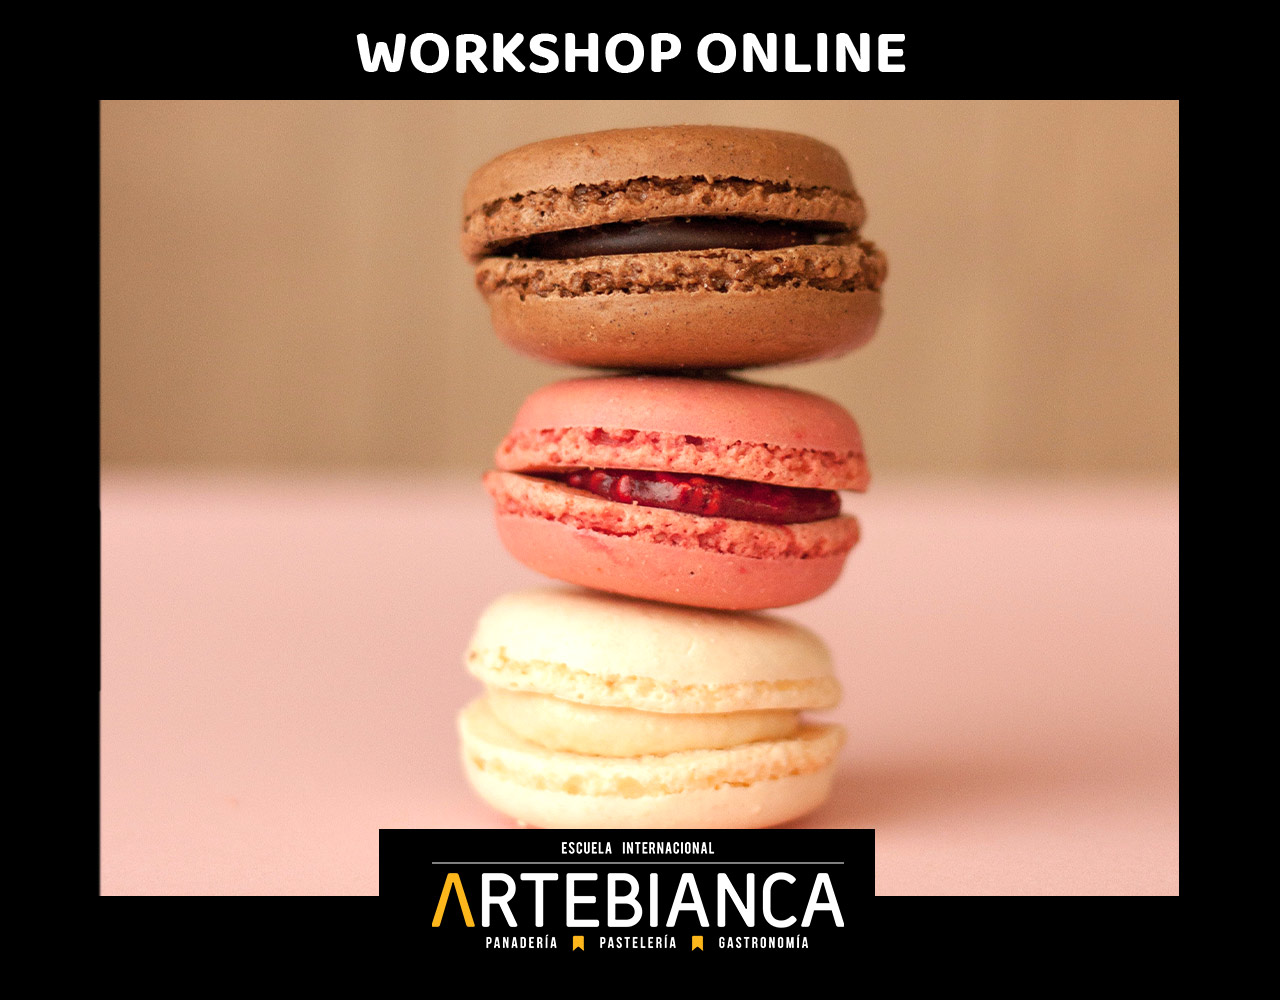 Workshop online Artebianca Macarons